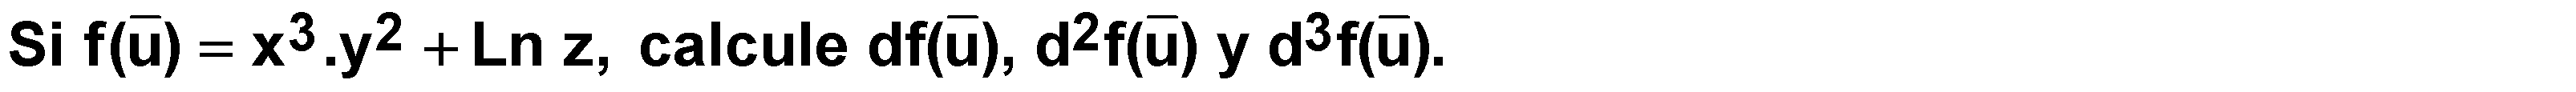 06.04 Ejercicio (Función de tres variables independientes)